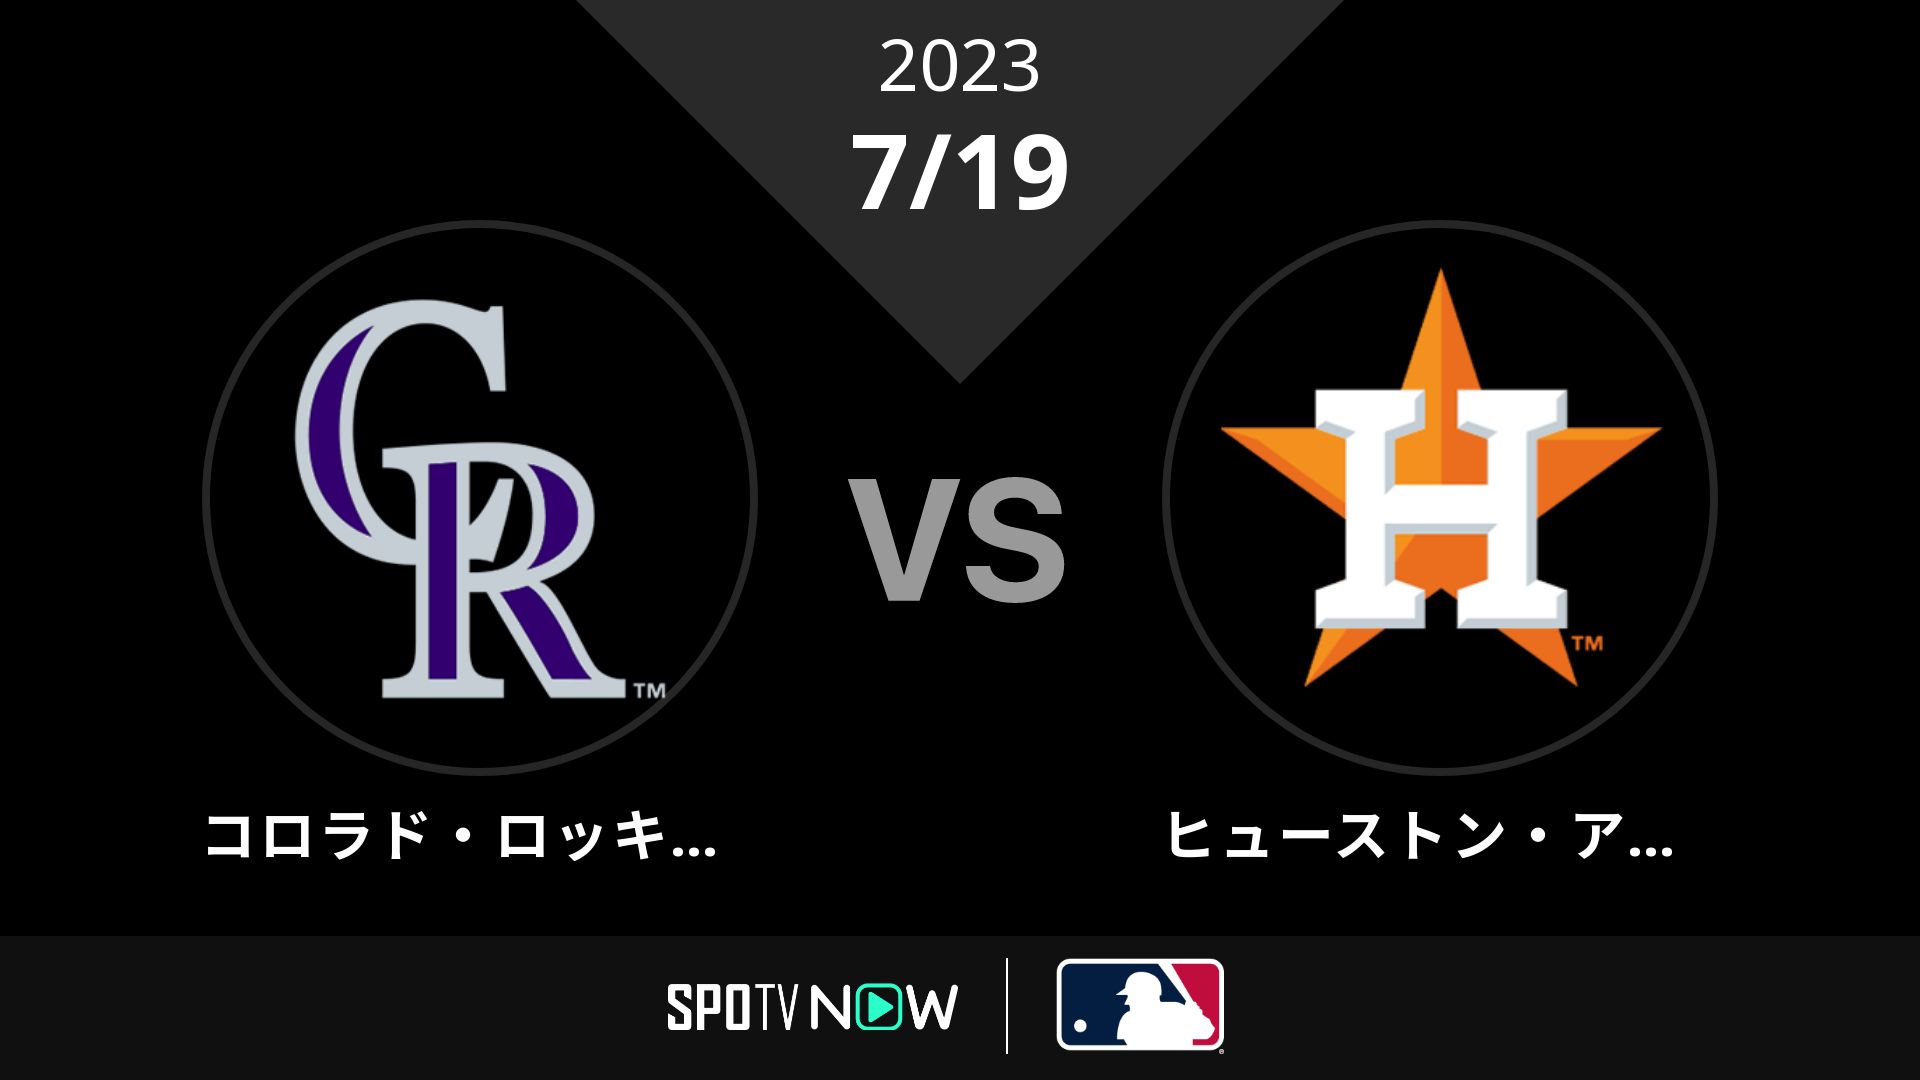 2023/7/19 ロッキーズ vs アストロズ [MLB]